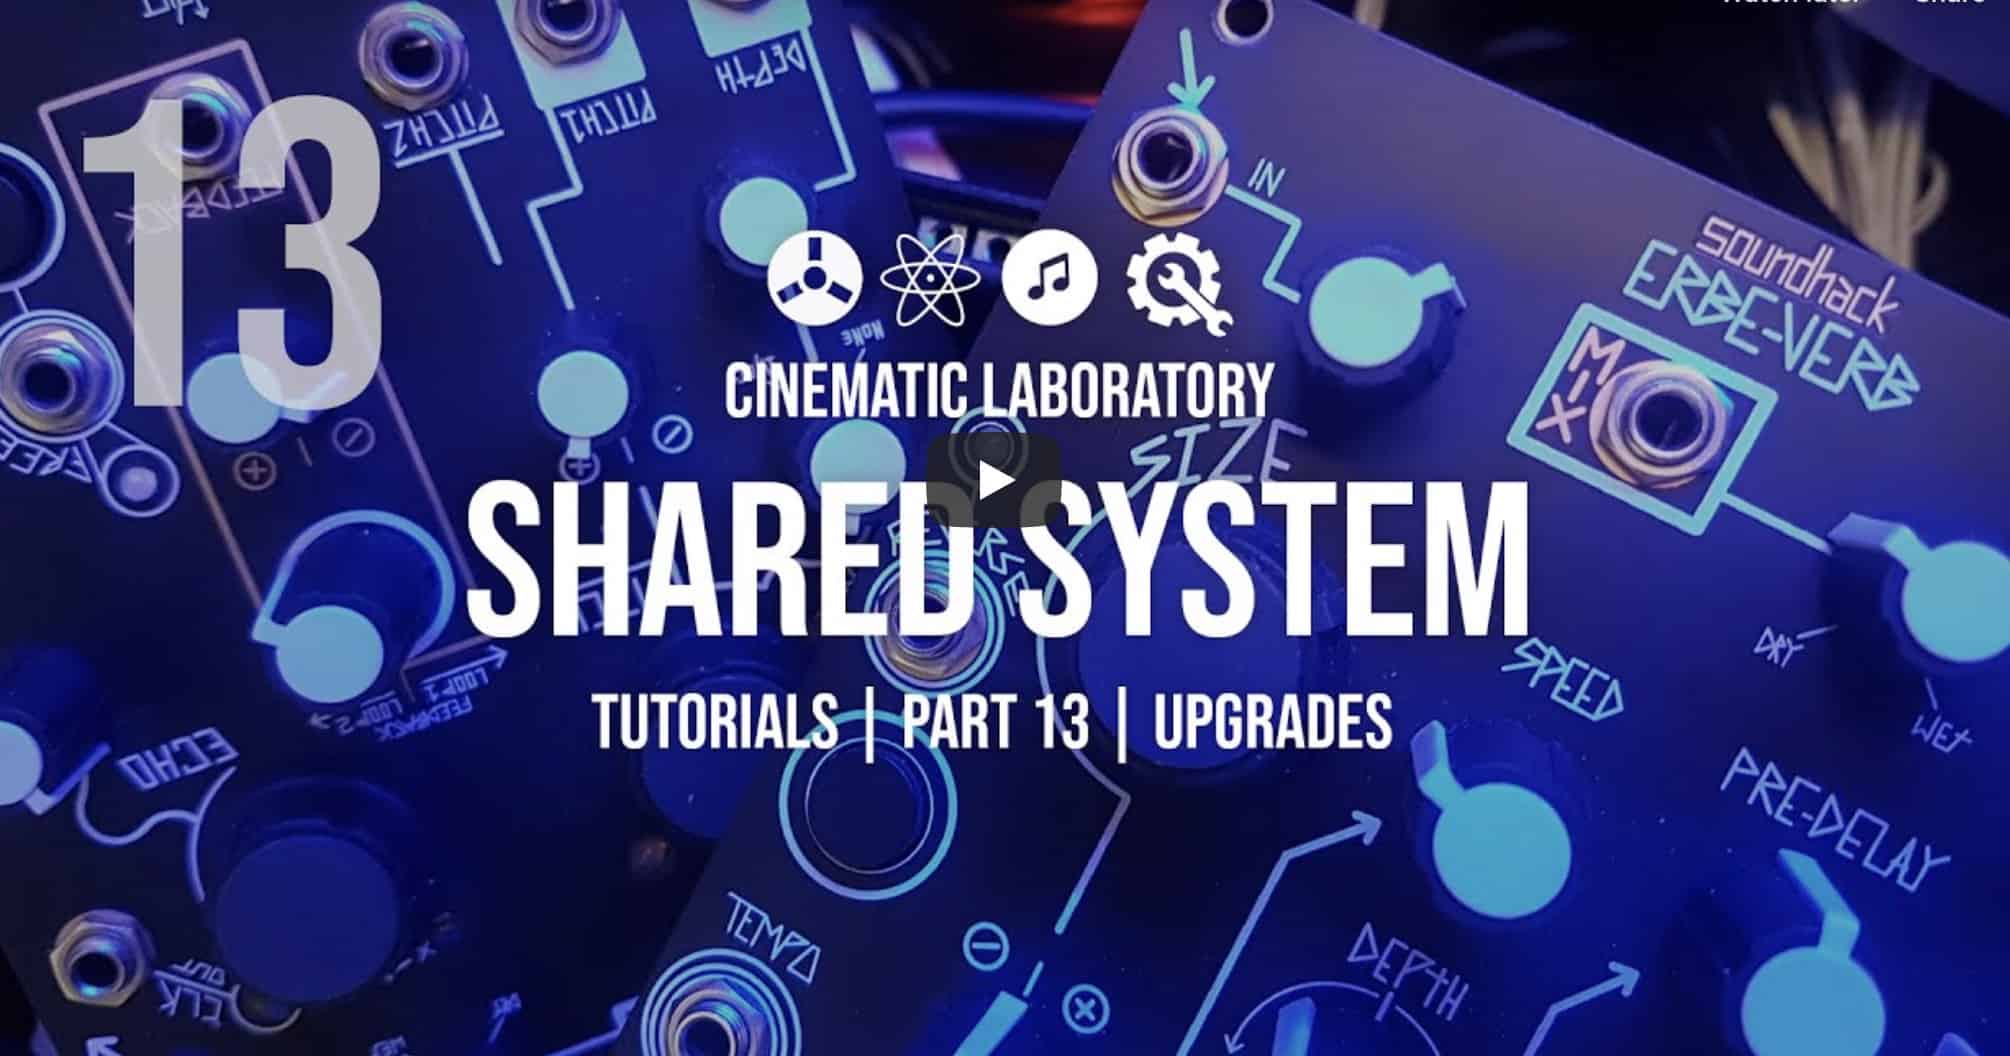 Shared System Tutorials | Part 13 - Upgrades